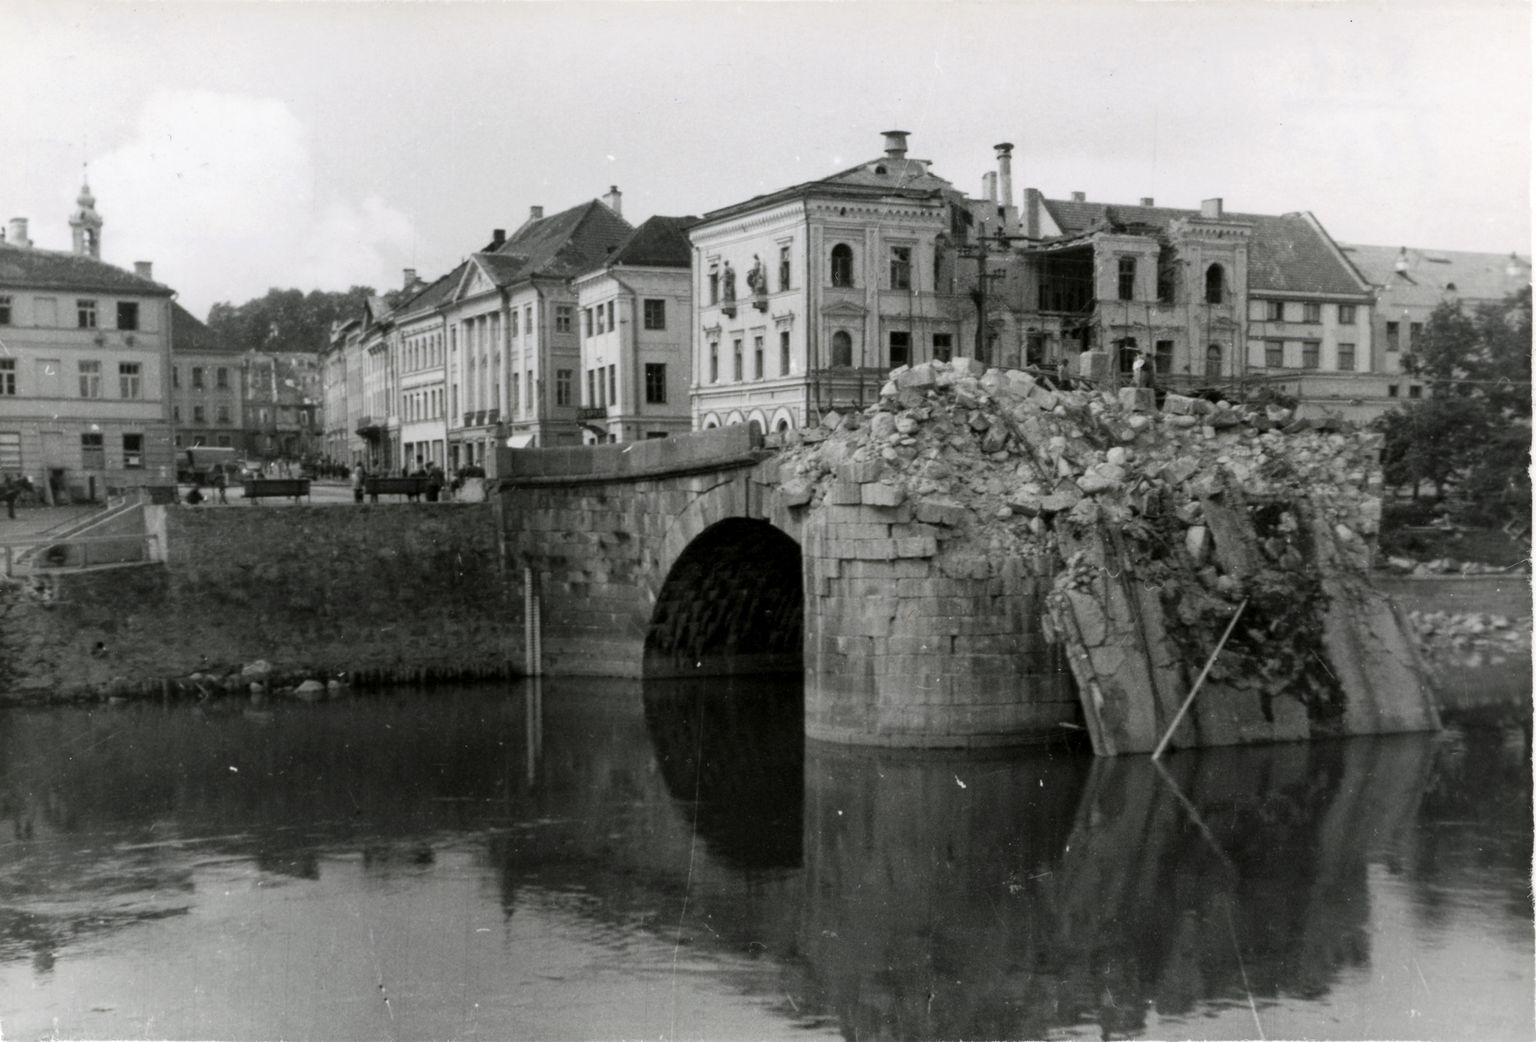 Purustatud Kivisild ja pangahoone Tartus 1941. aastal